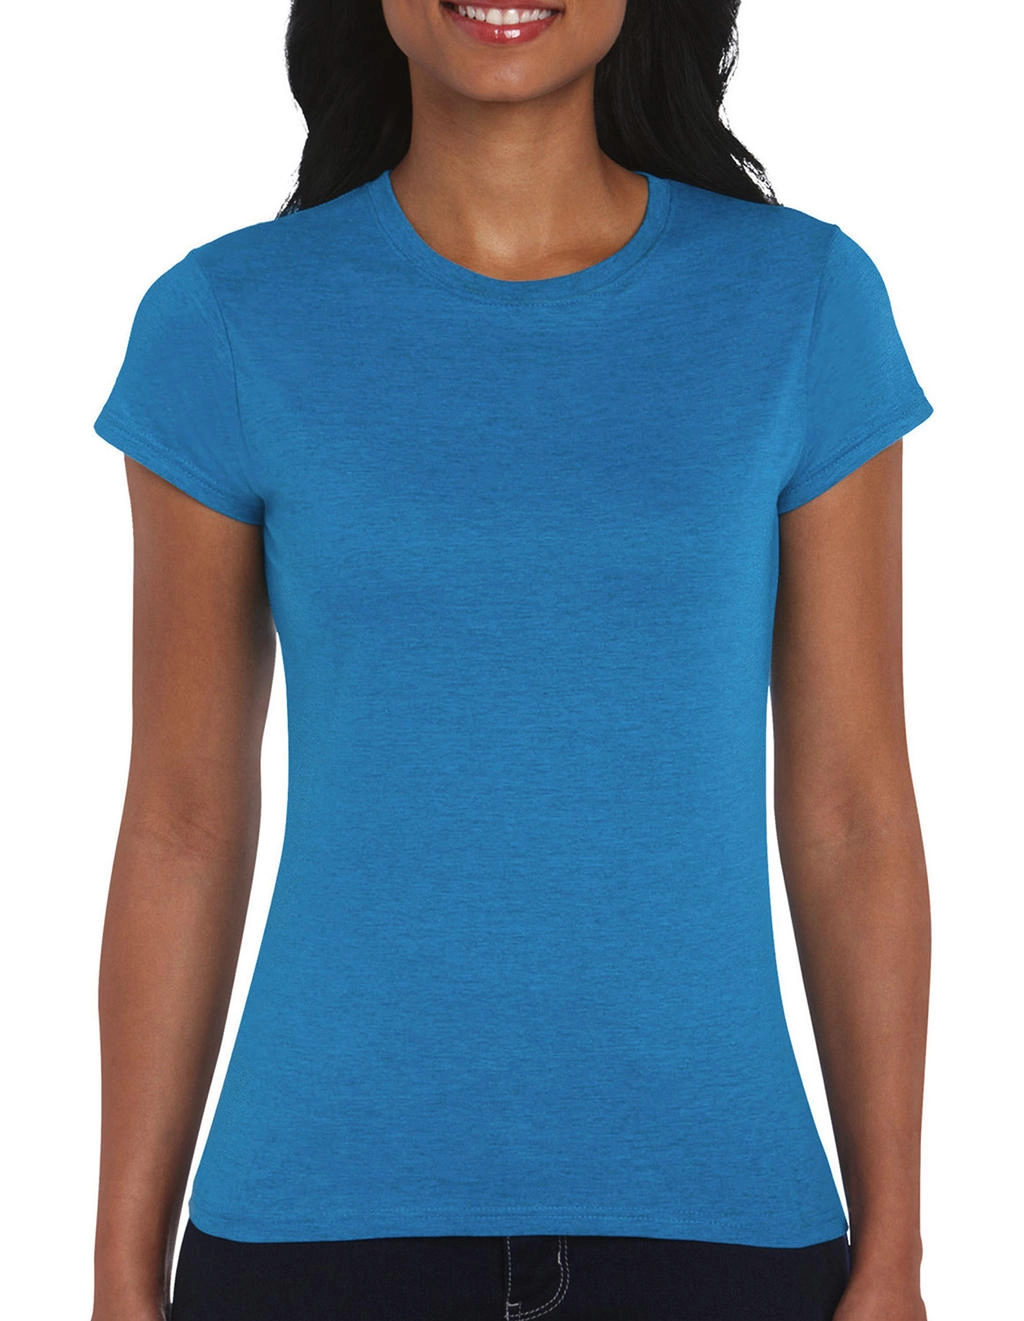 Softstyle® Ladies` T-Shirt zum Besticken und Bedrucken in der Farbe Antique Sapphire mit Ihren Logo, Schriftzug oder Motiv.